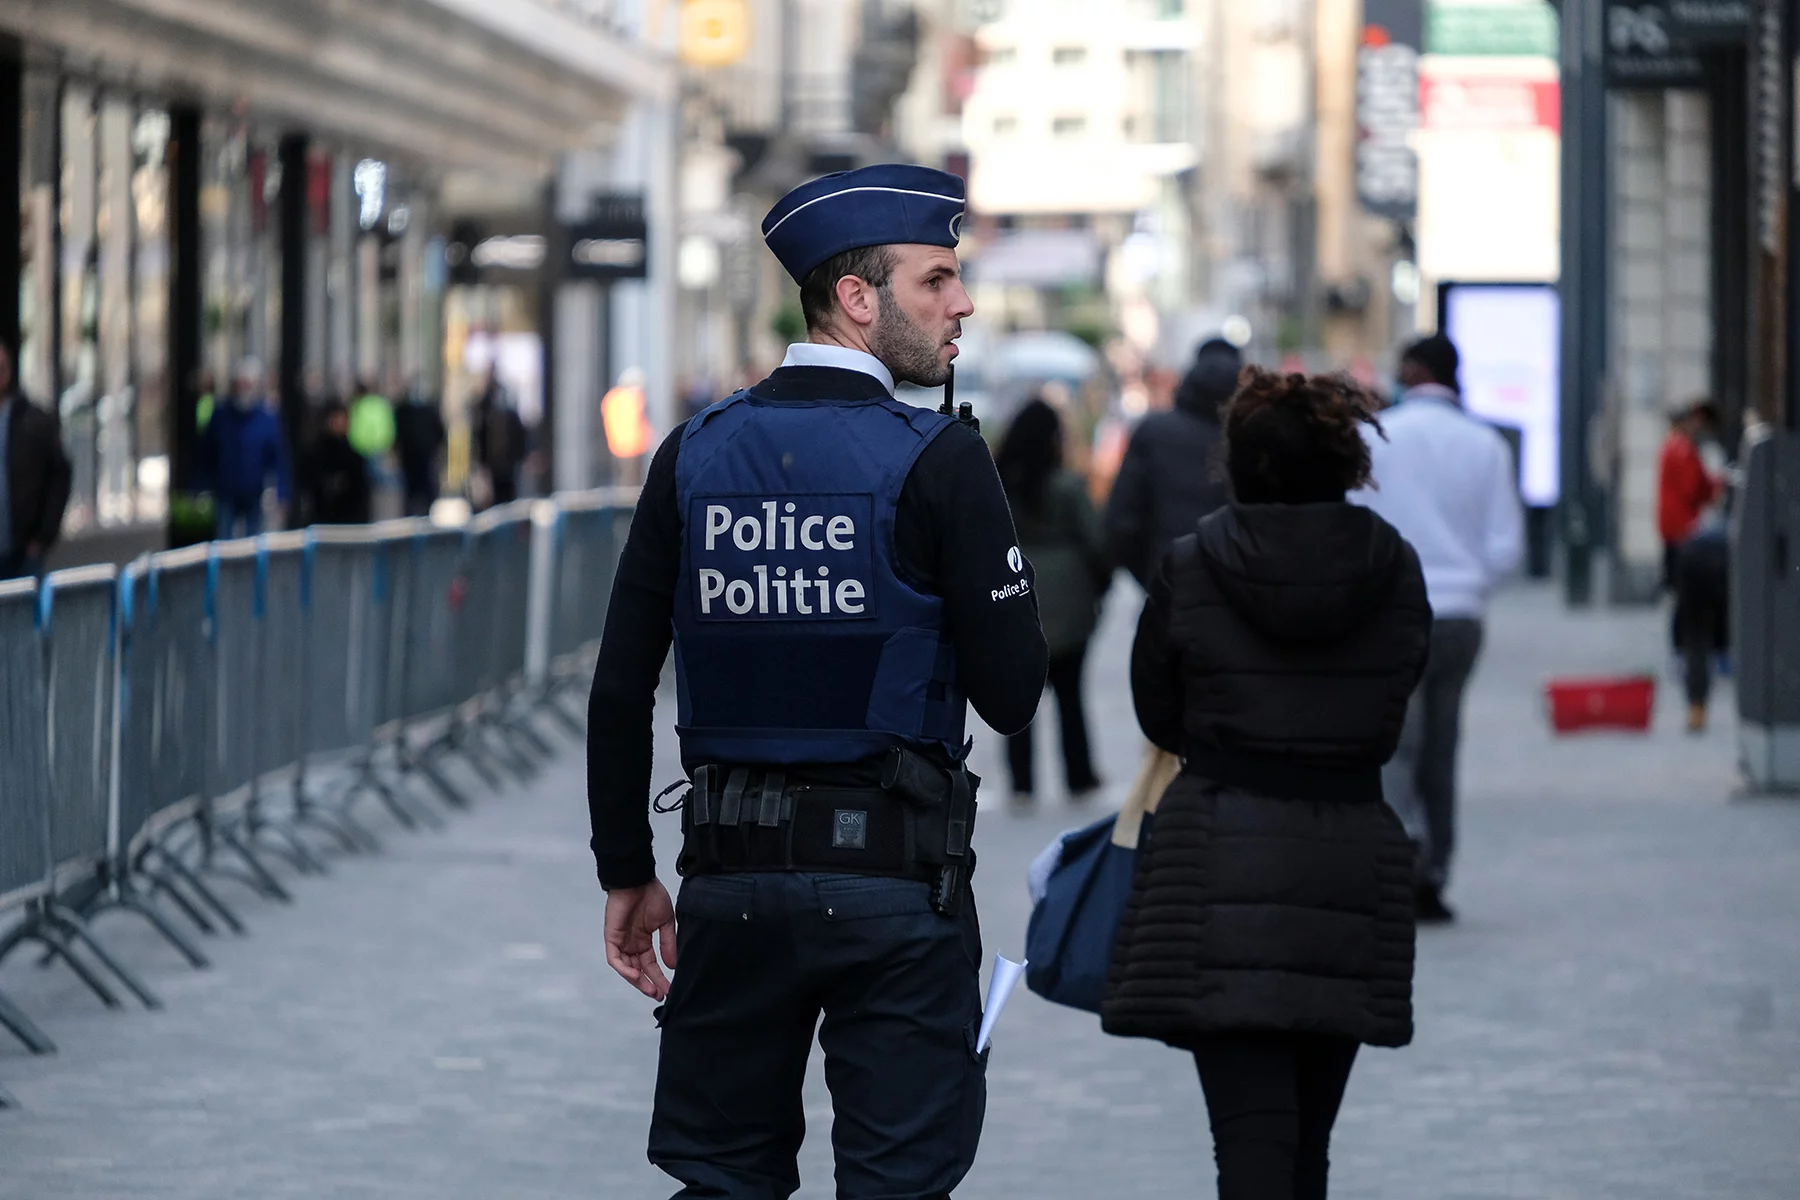 Police officer on patrol in Brussels, Belgium